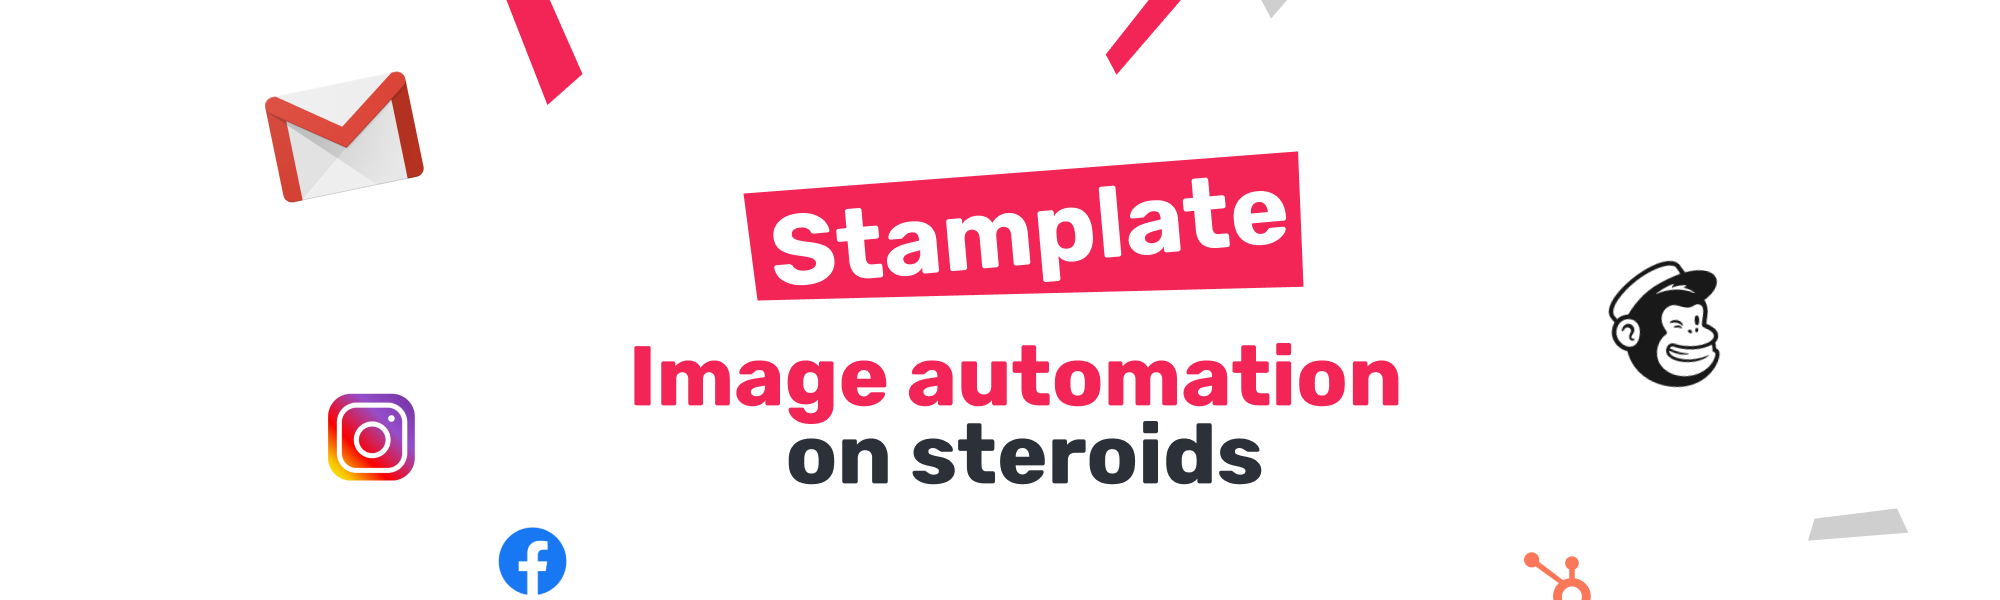 Avis Stamplate : Automatisez la génération d'images personnalisées - Appvizer